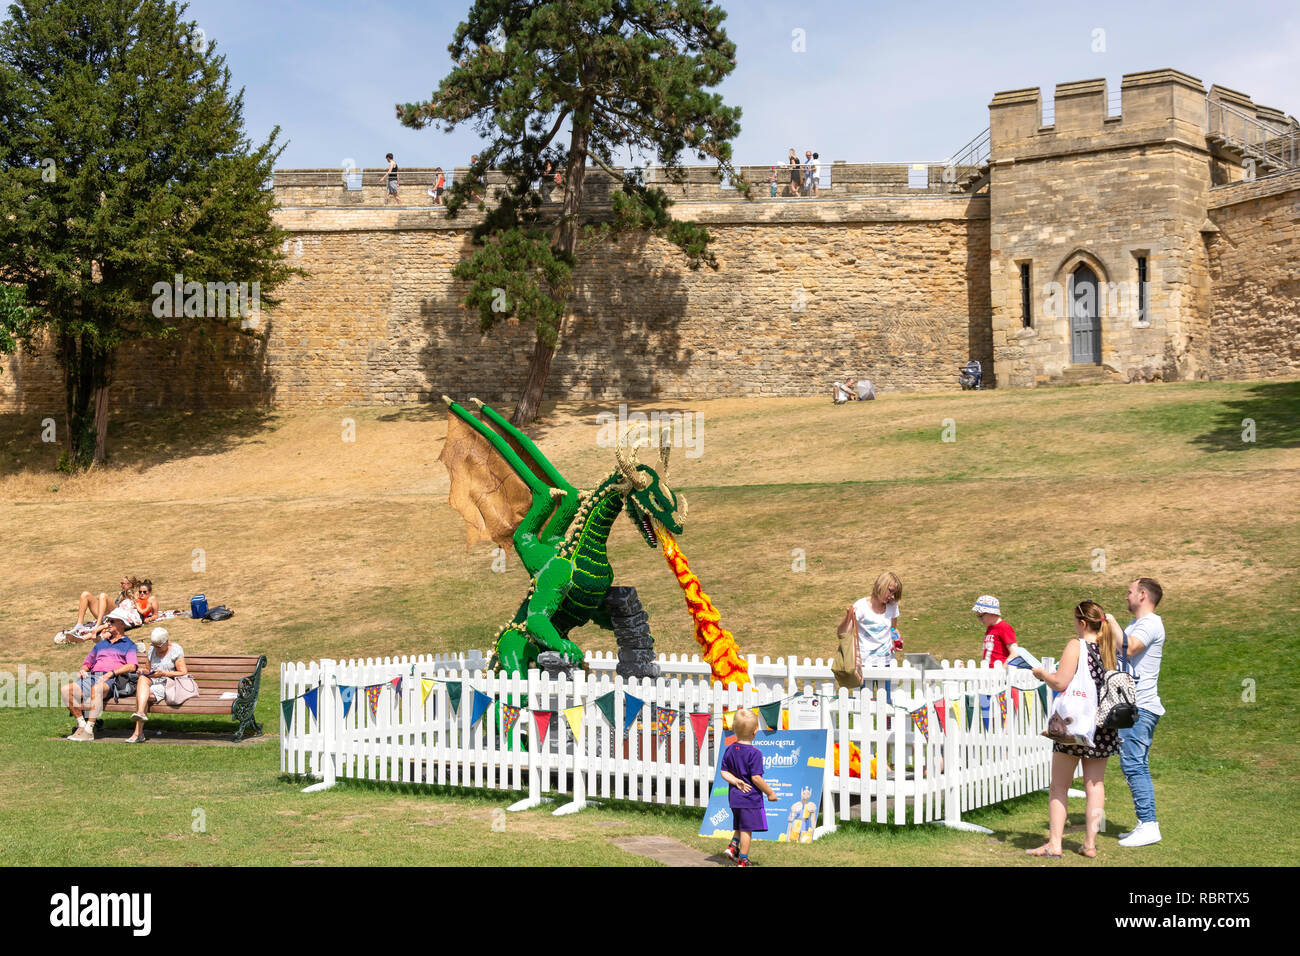 'Kingdom Lego dragon' la pièce dans un parc de château de Lincoln, Lincoln, Lincolnshire, Angleterre, Royaume-Uni Banque D'Images